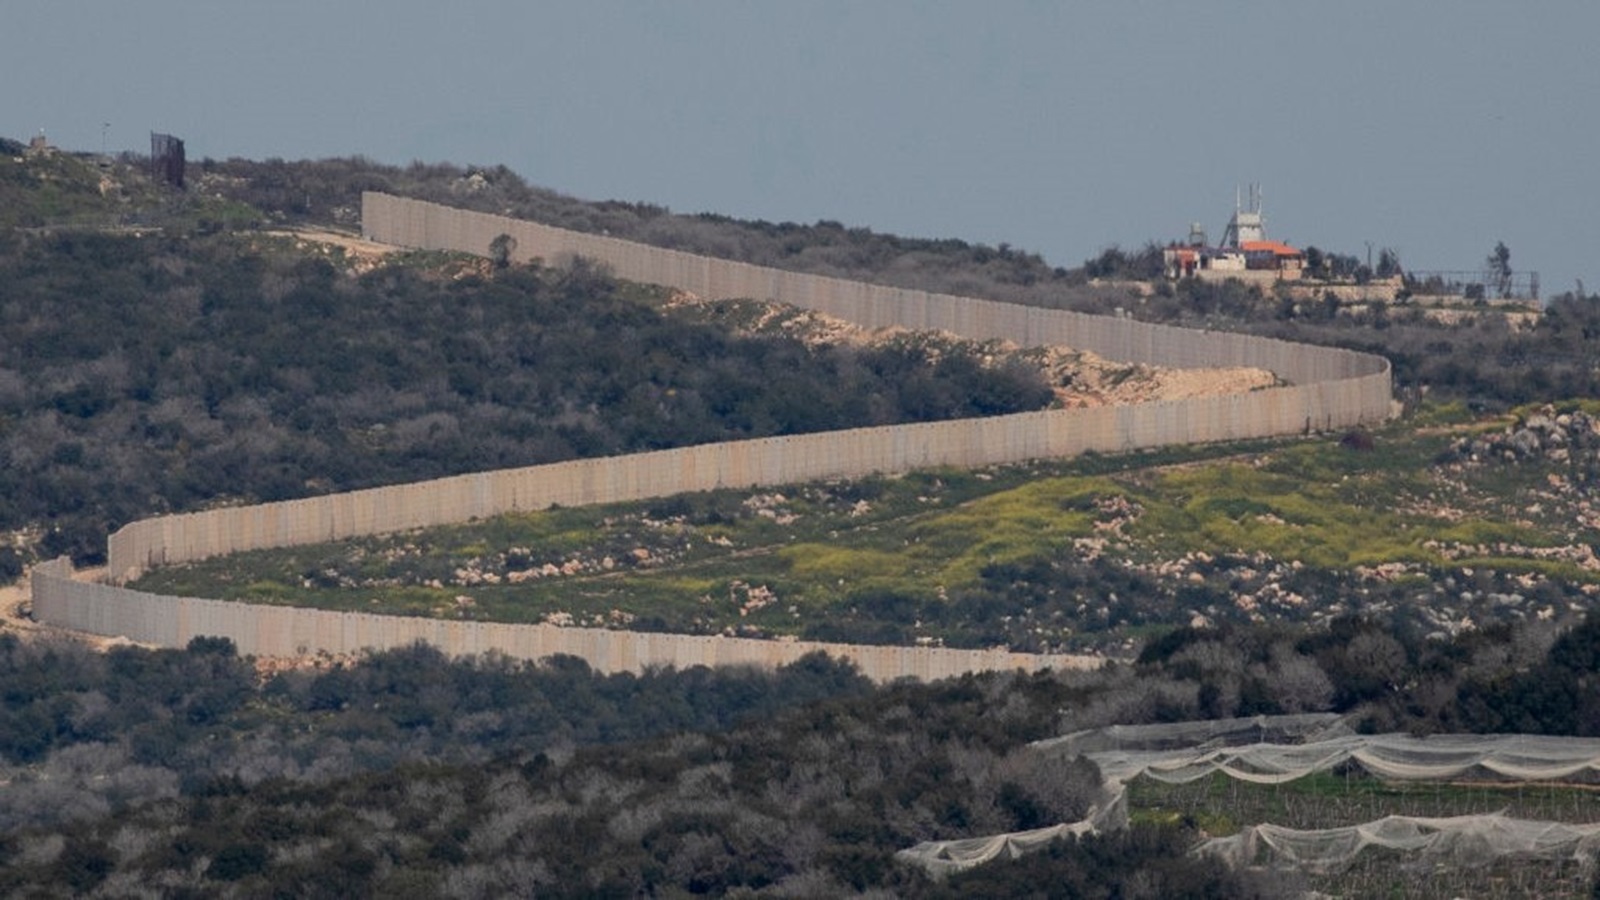 التسوية الإسرائيلية مع لبنان صعبة: الكنيست سيرفض تعديل الحدود